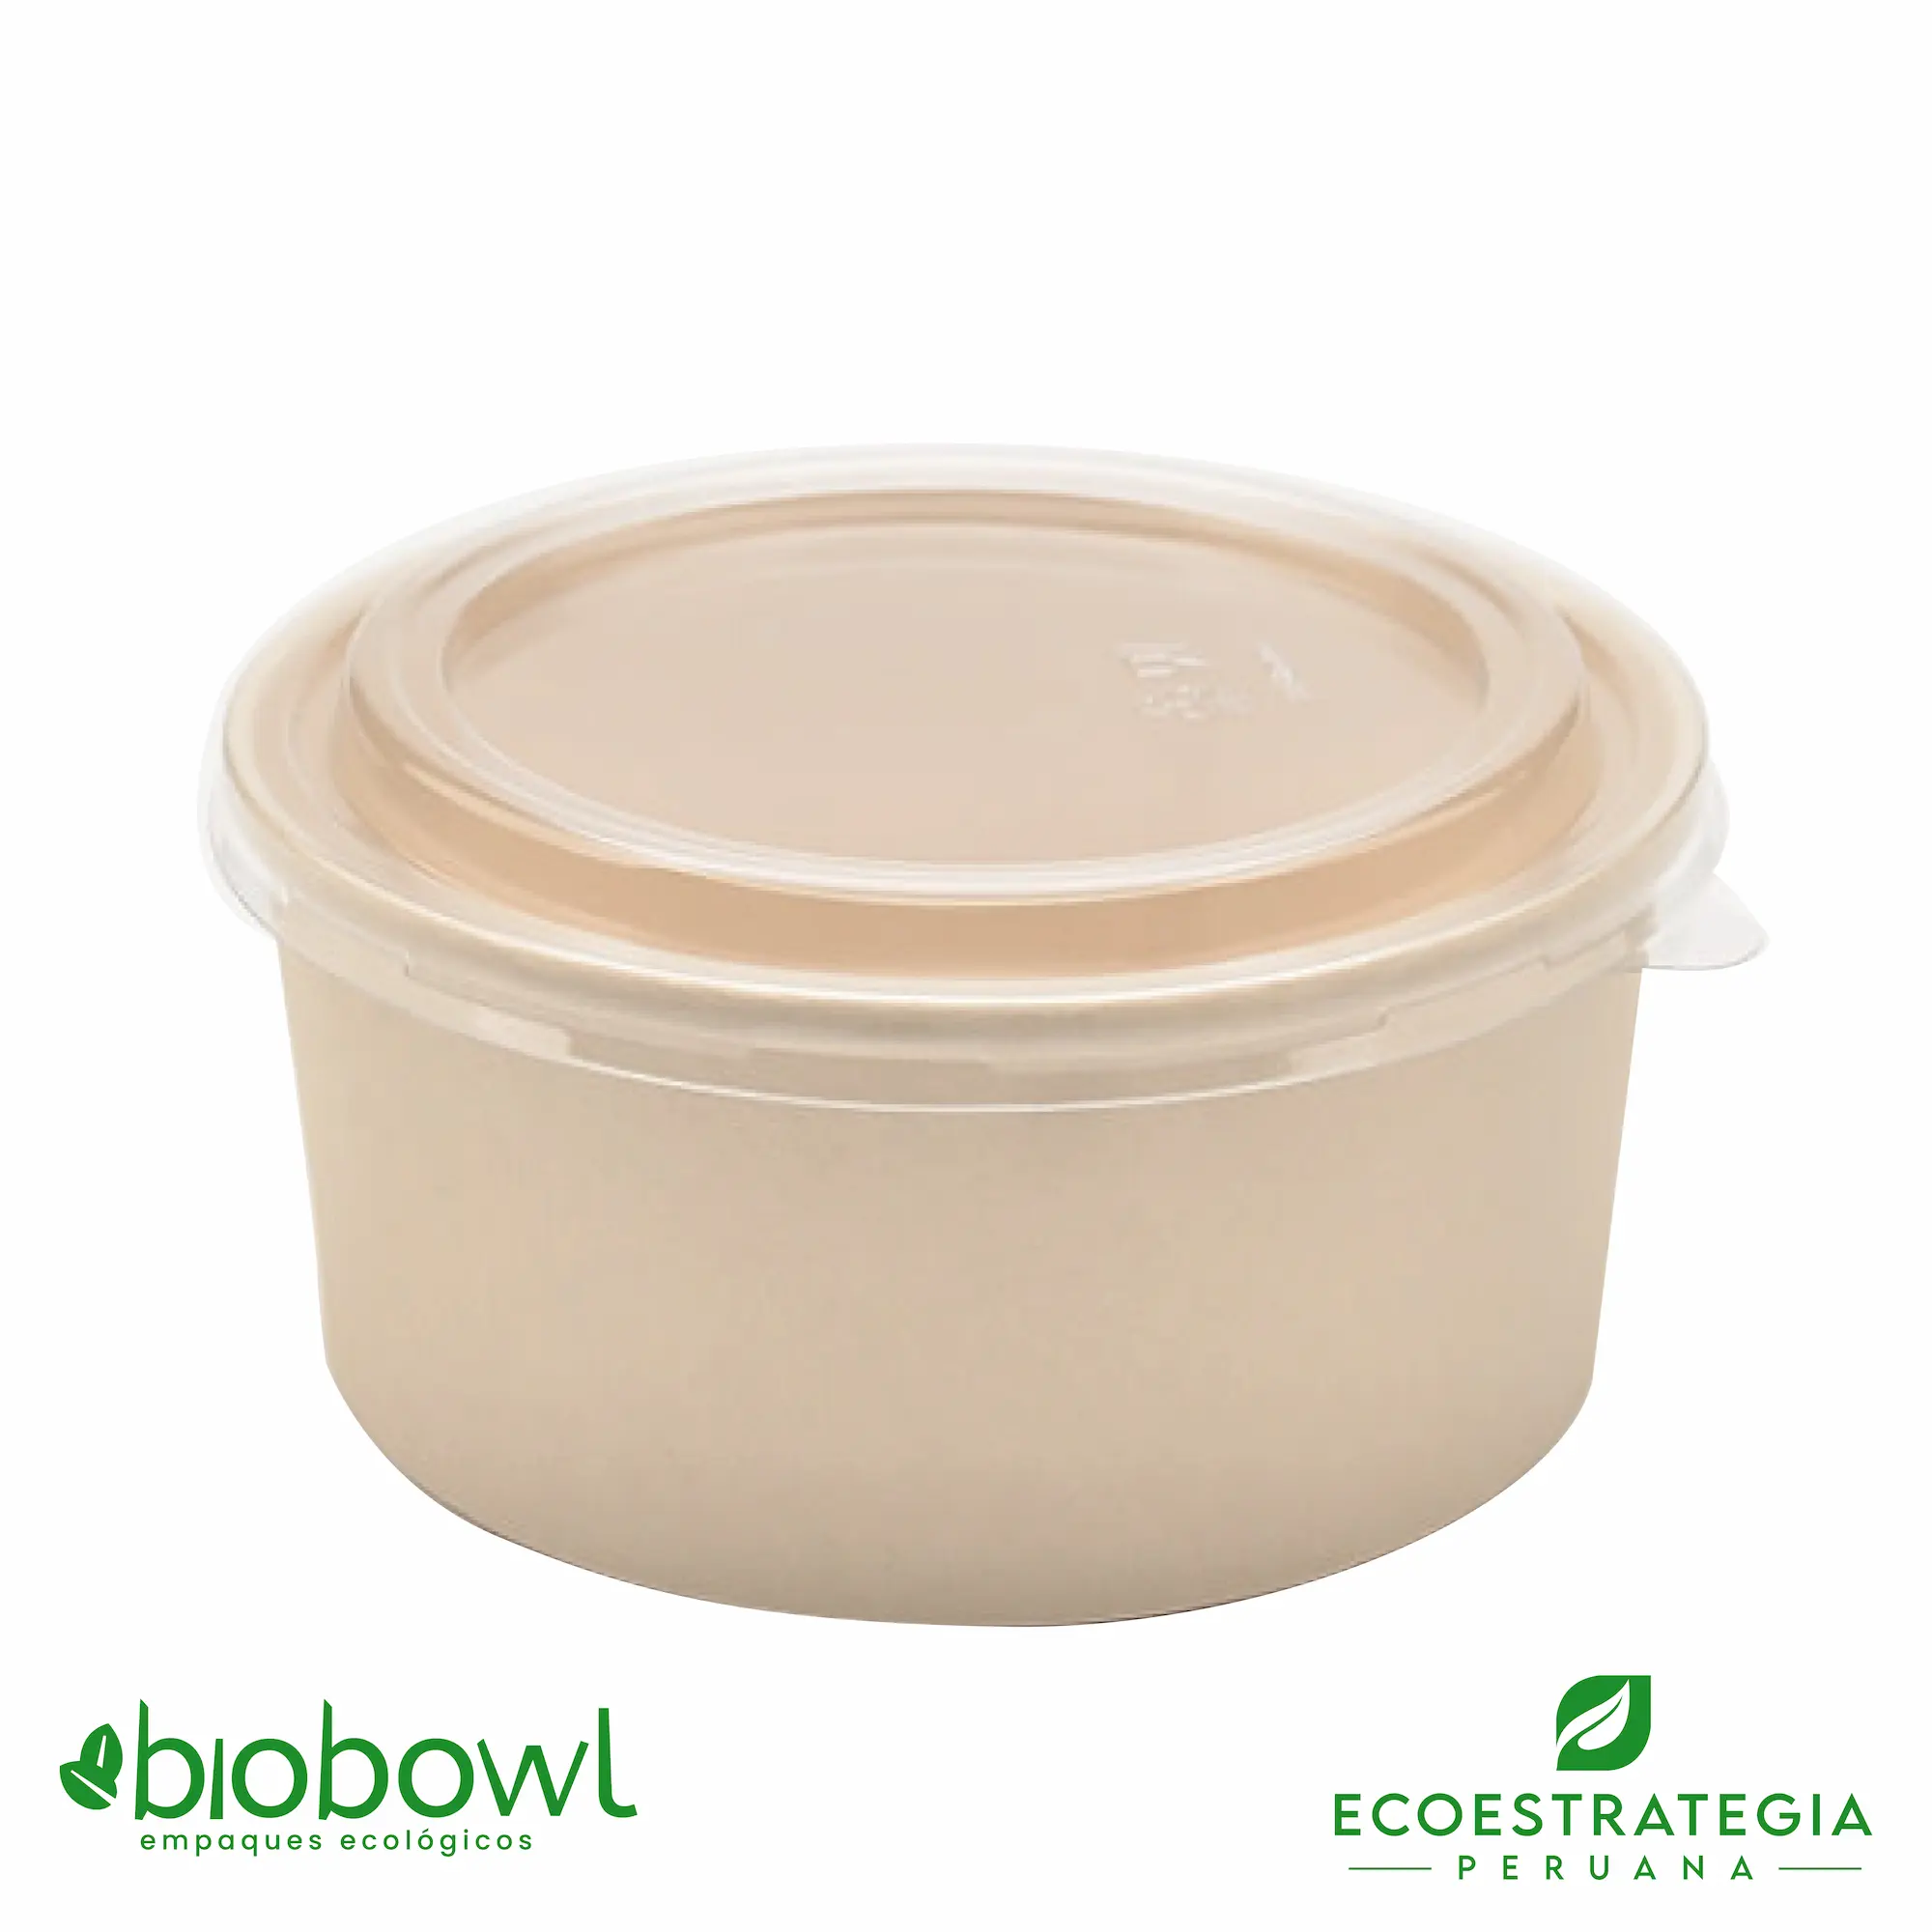 Este envase biodegradable es un bowl 1000ml hecho de bambú. Envases descartables con gramaje ideal, cotiza tus vasos para helados, táper para sopa, bowls salad